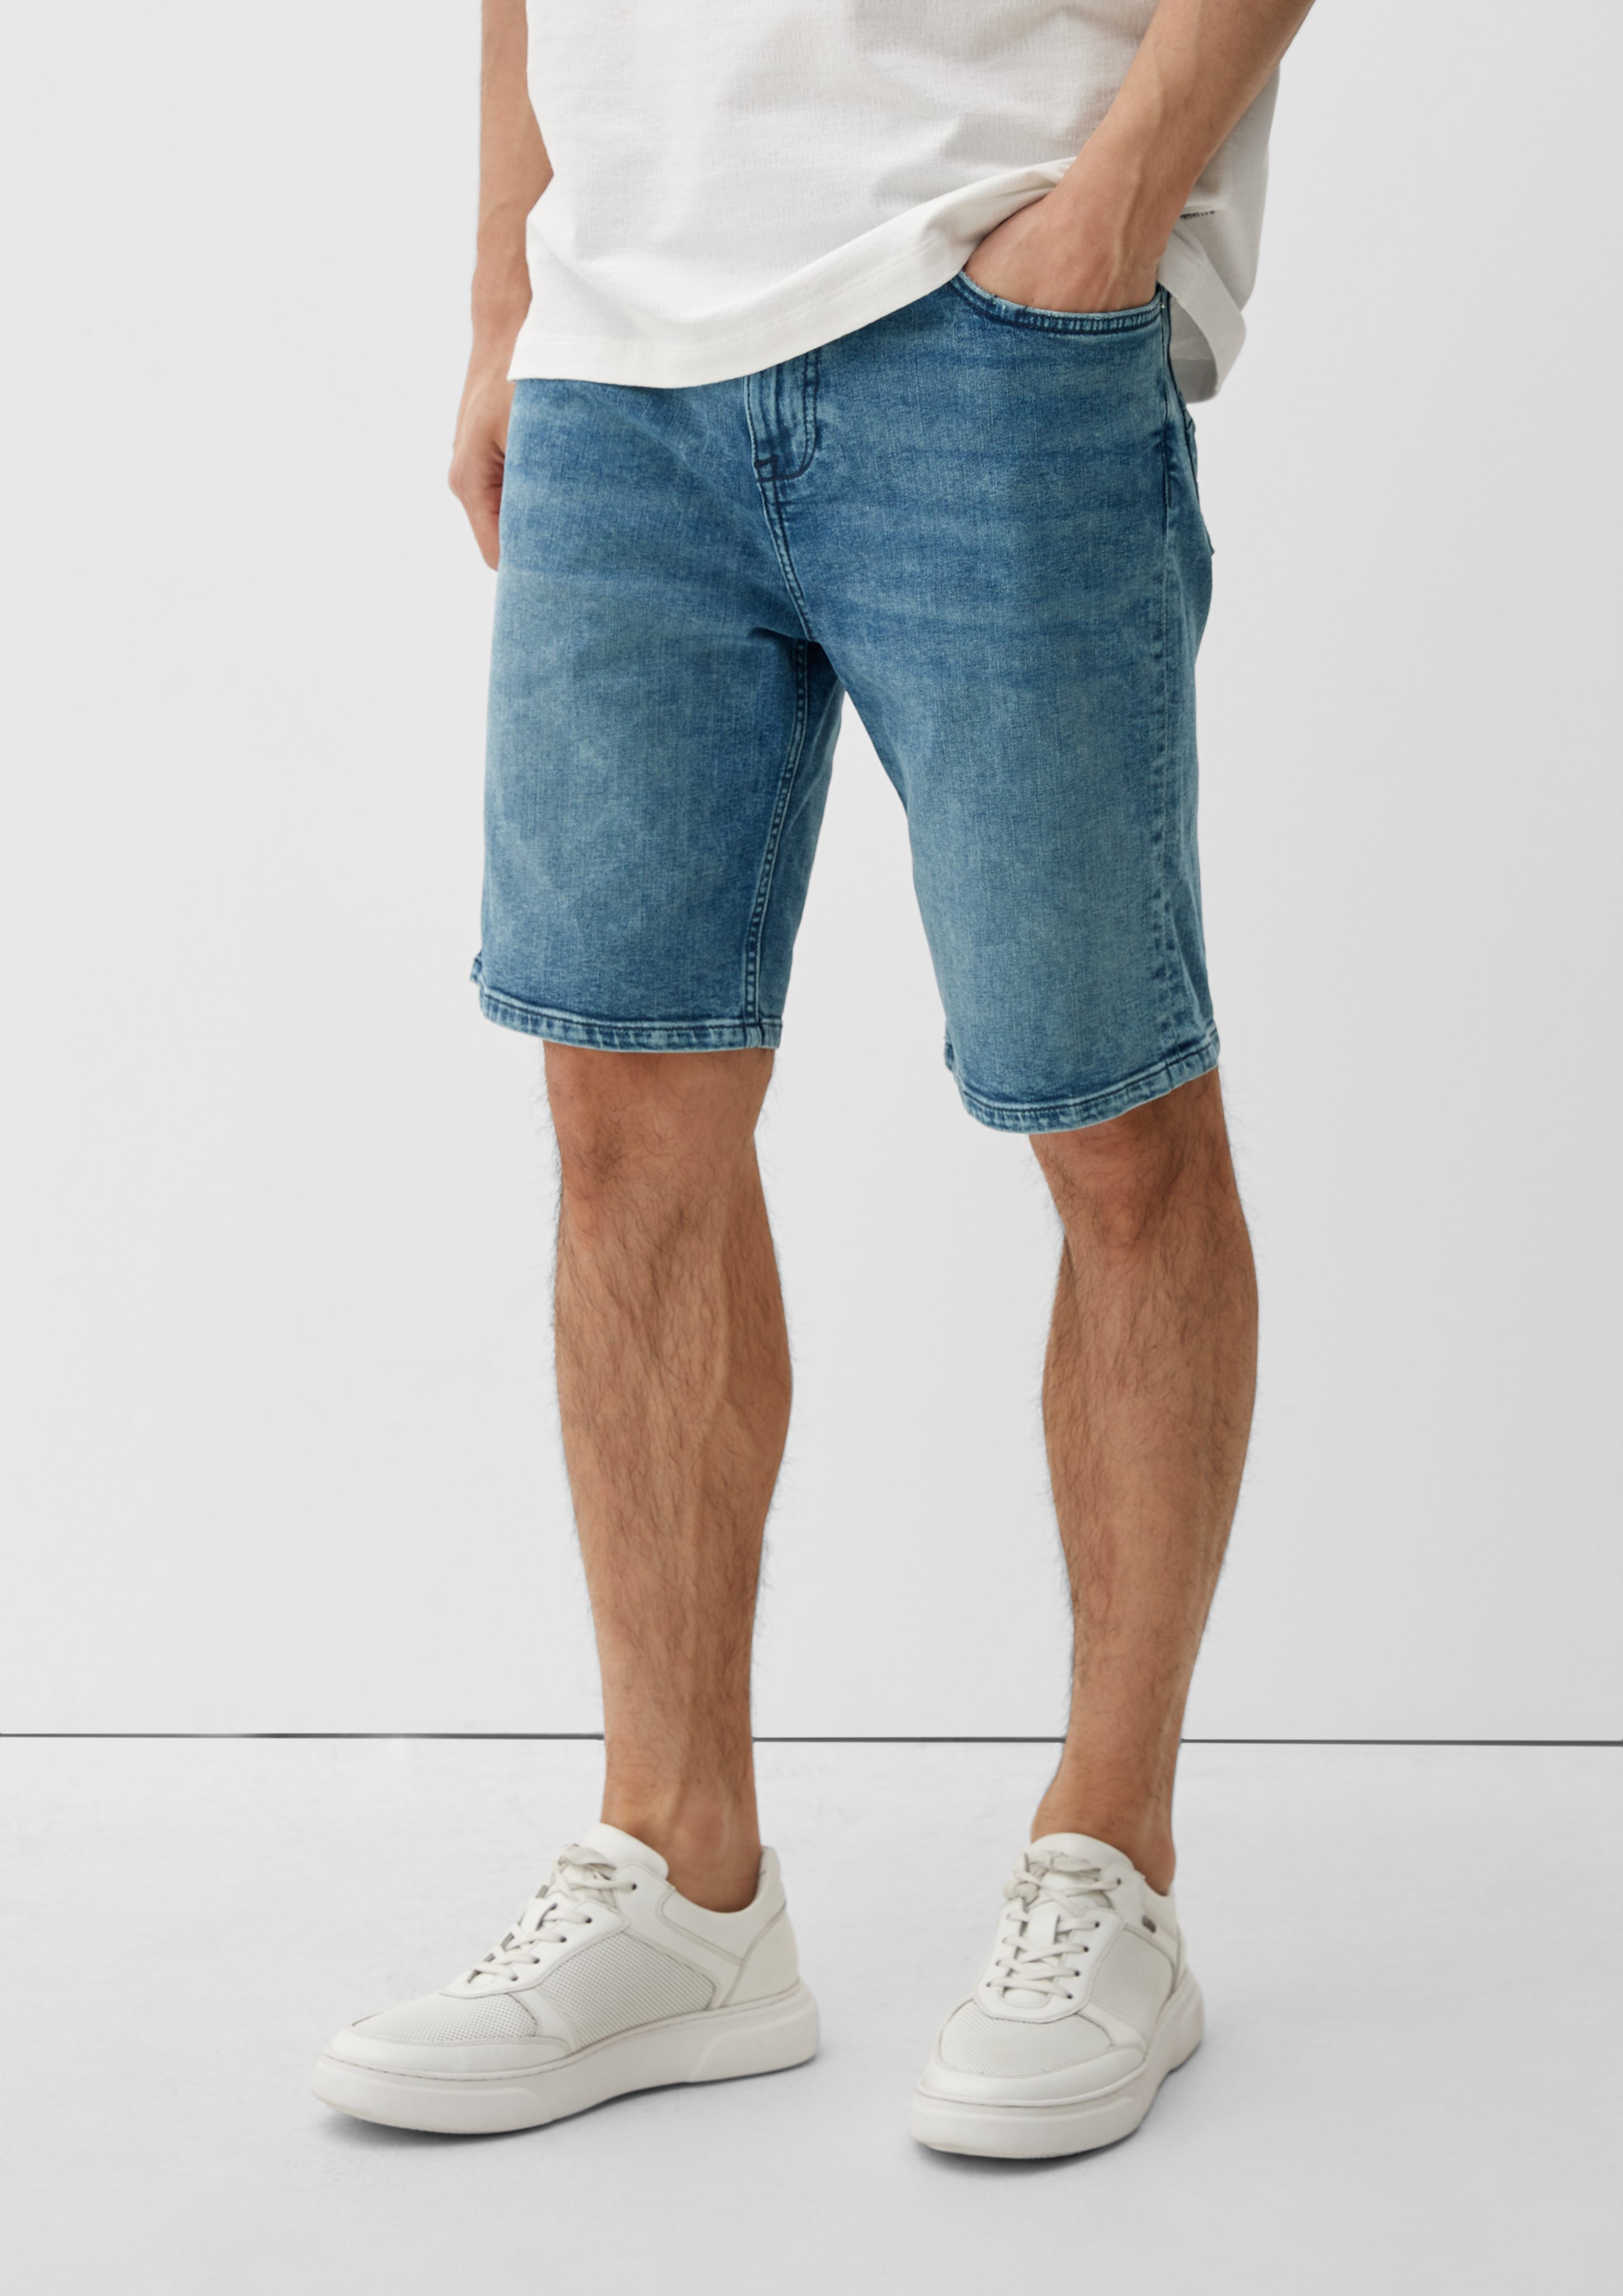 Rise Fit / / Jeans Mid / Straight Taschen Leg, Keith mit Jeansshorts im hat s.Oliver Slim Reißverschluss, Knopfverschluss, 5-Pocket-Design einen mit